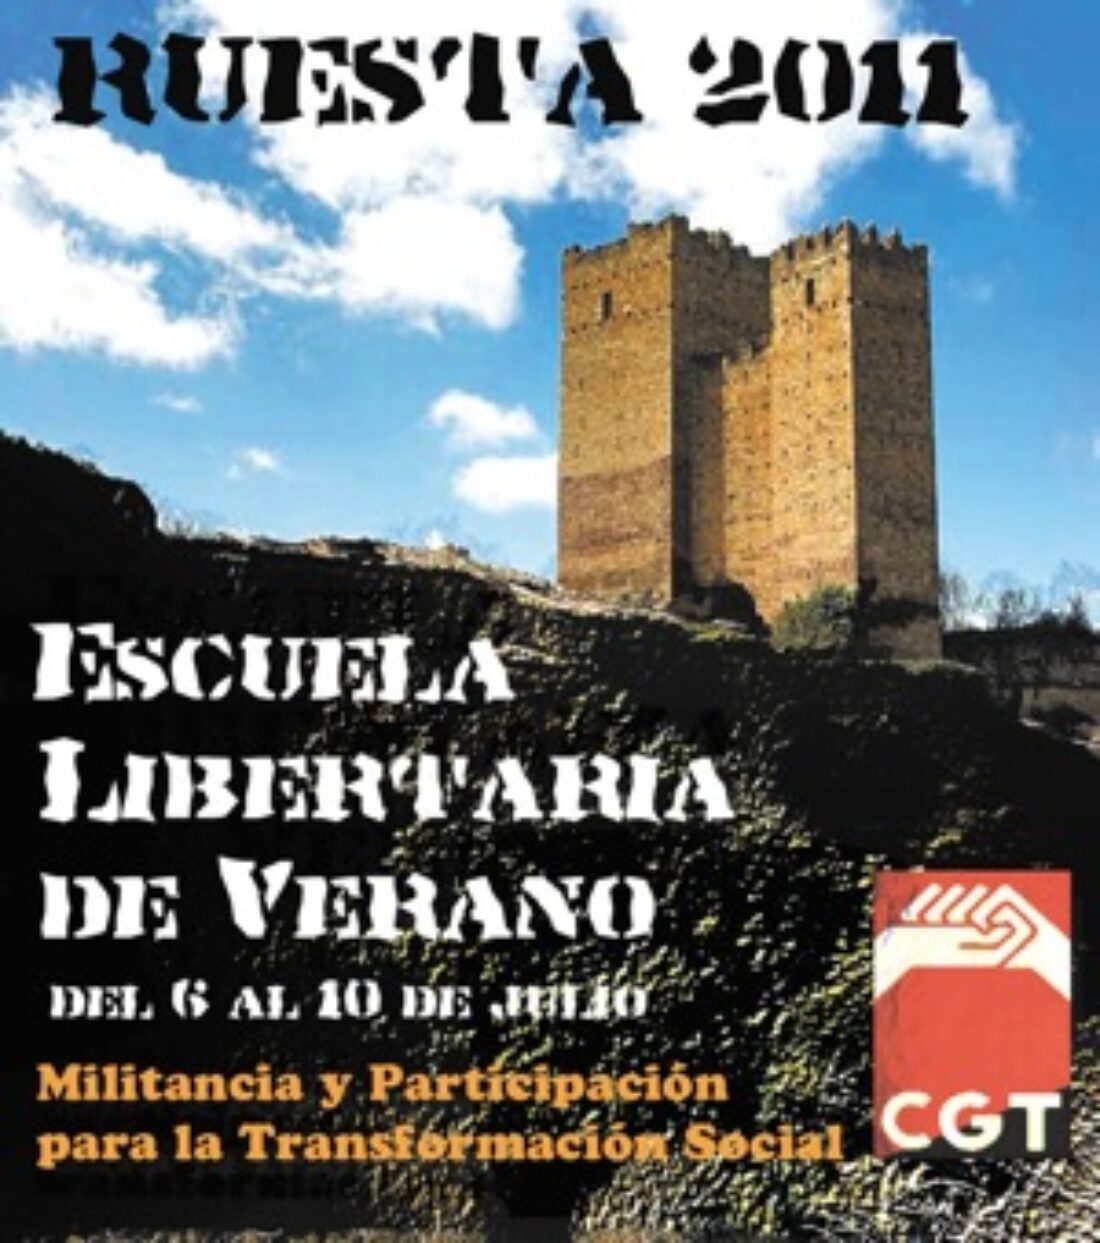 Escuela Libertaria de Verano 2011 en Ruesta: Militancia y participación para la transformación social